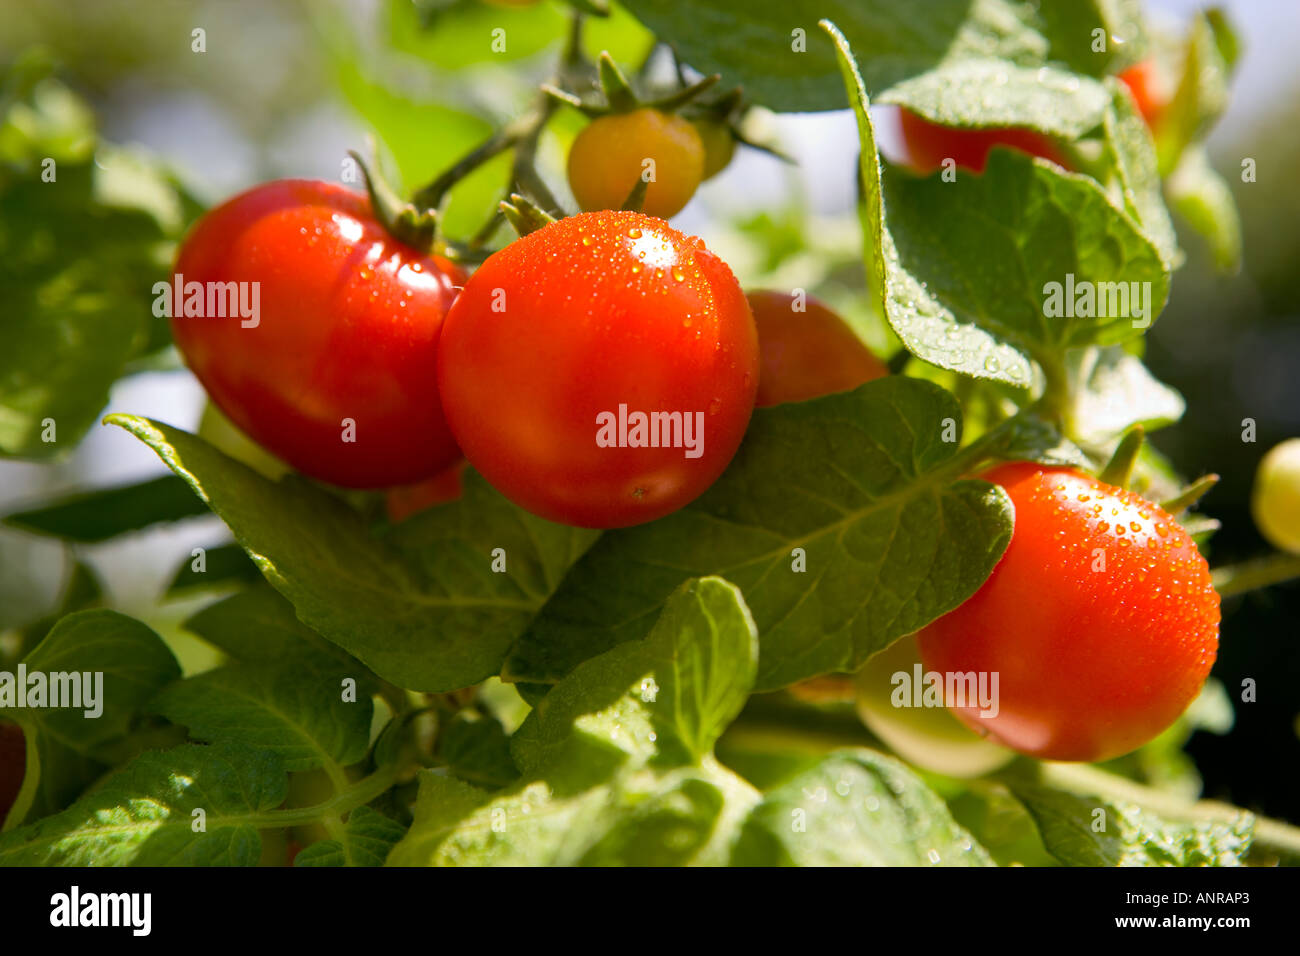 COMMON NAME: Tomatoes  LATIN NAME: Lycopersicon Esculentum Stock Photo